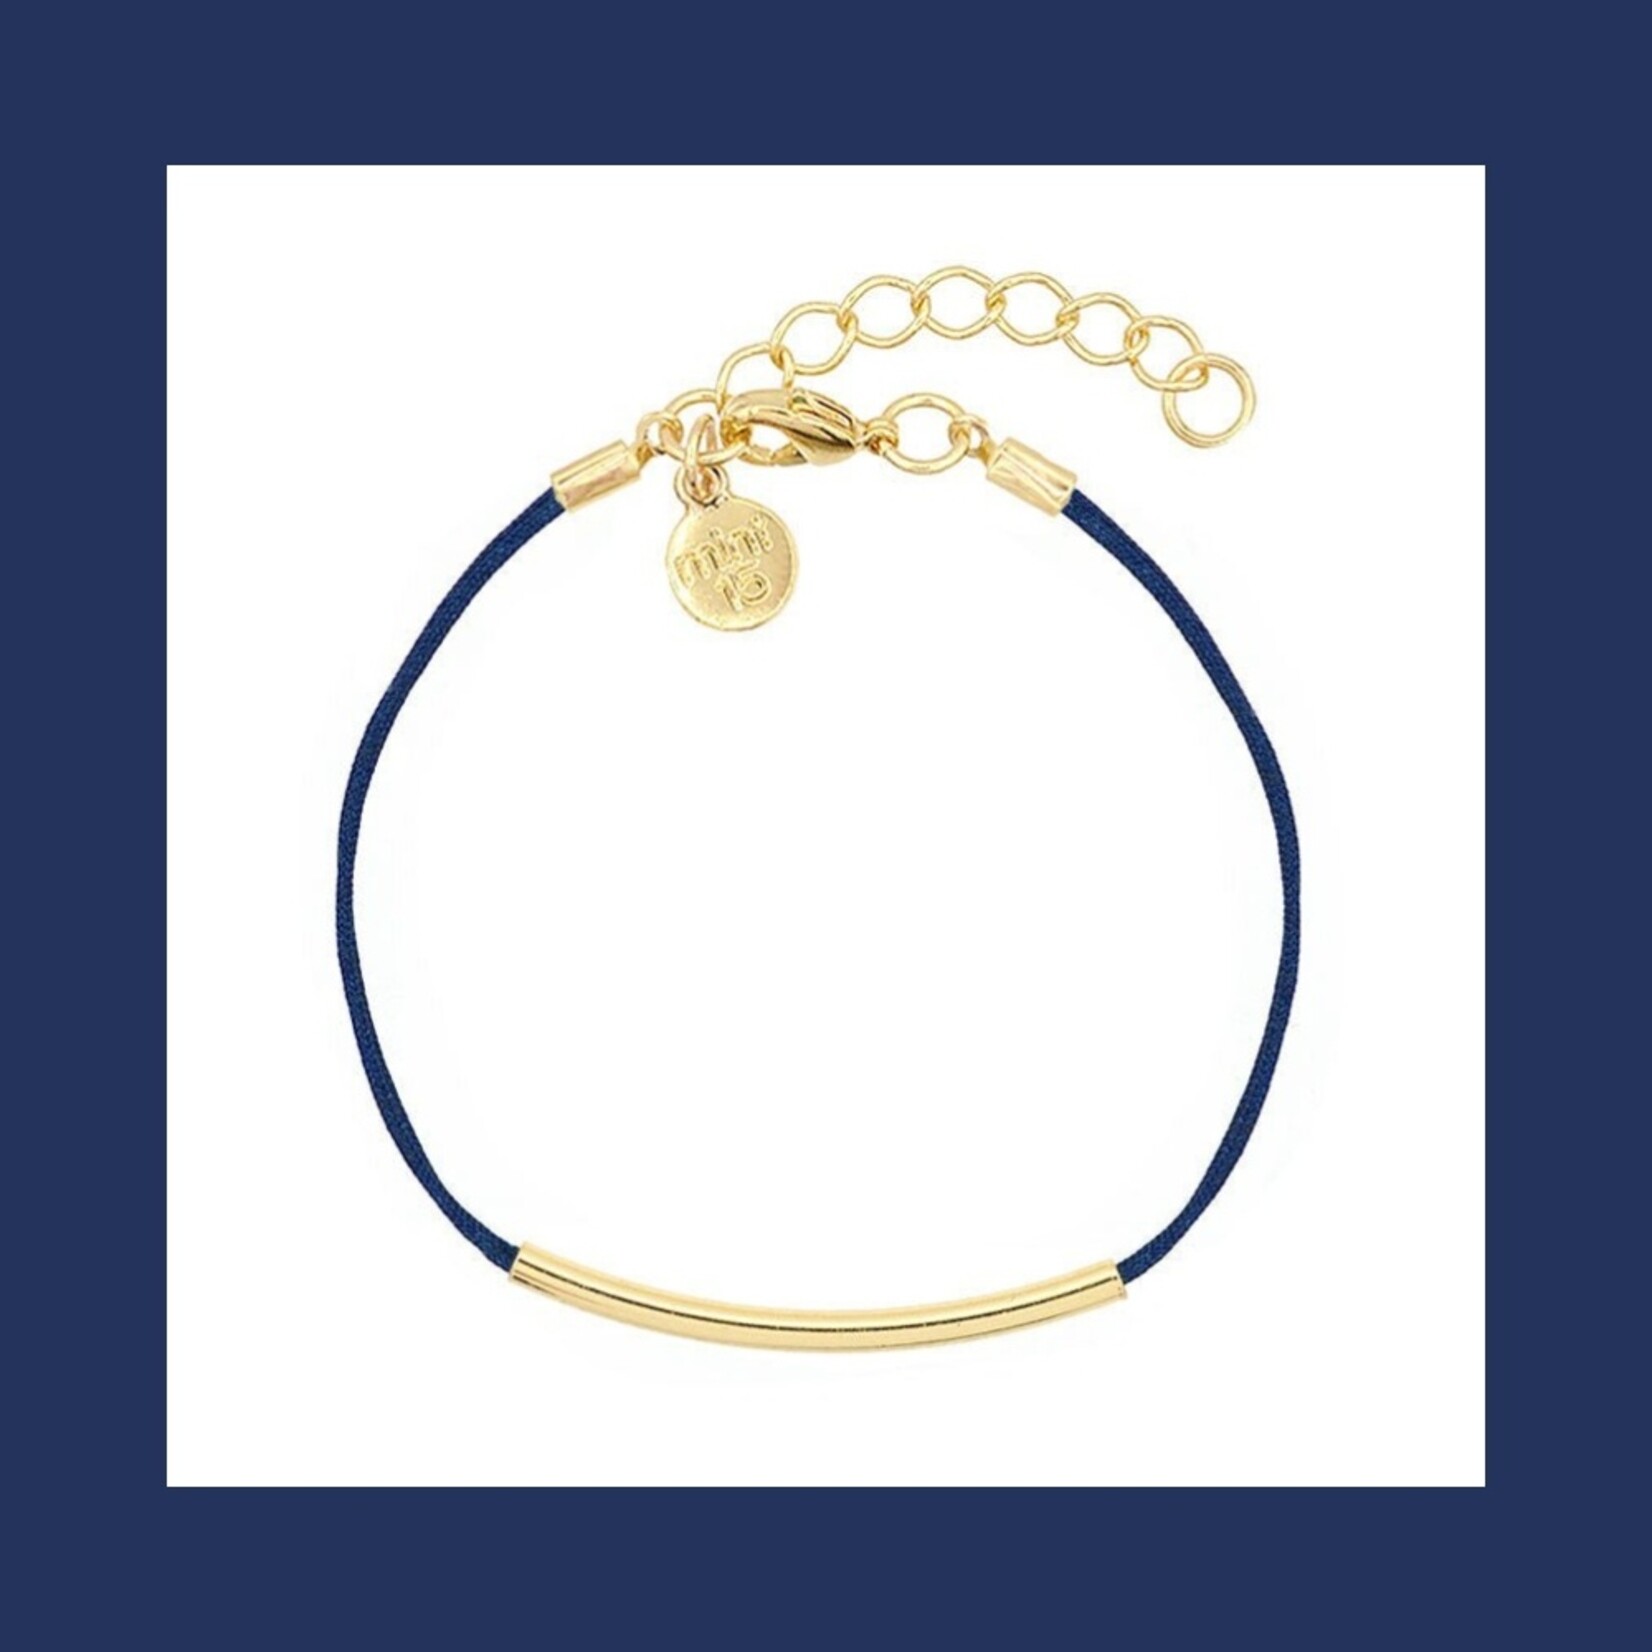 Mint15 goudkleurige armband met marineblauw koord